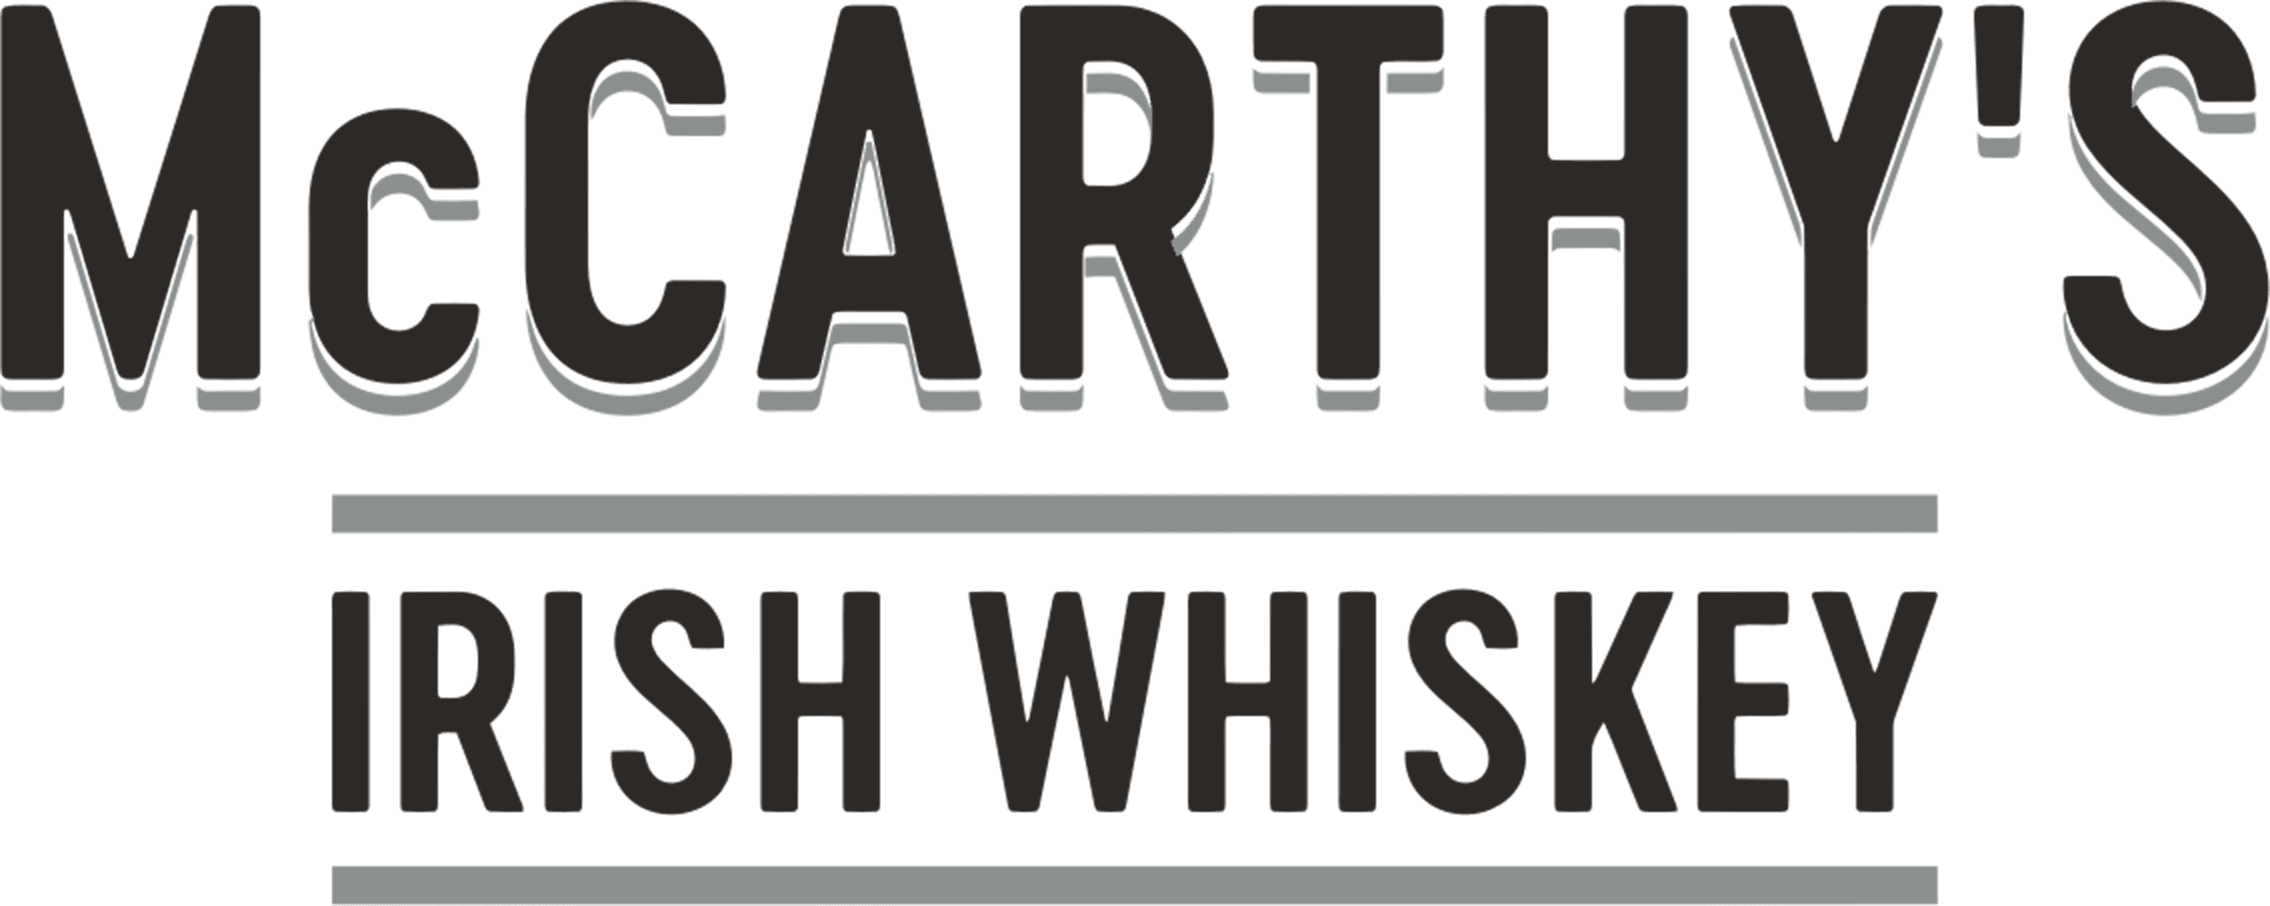 McCarthy's Irish Whiskey